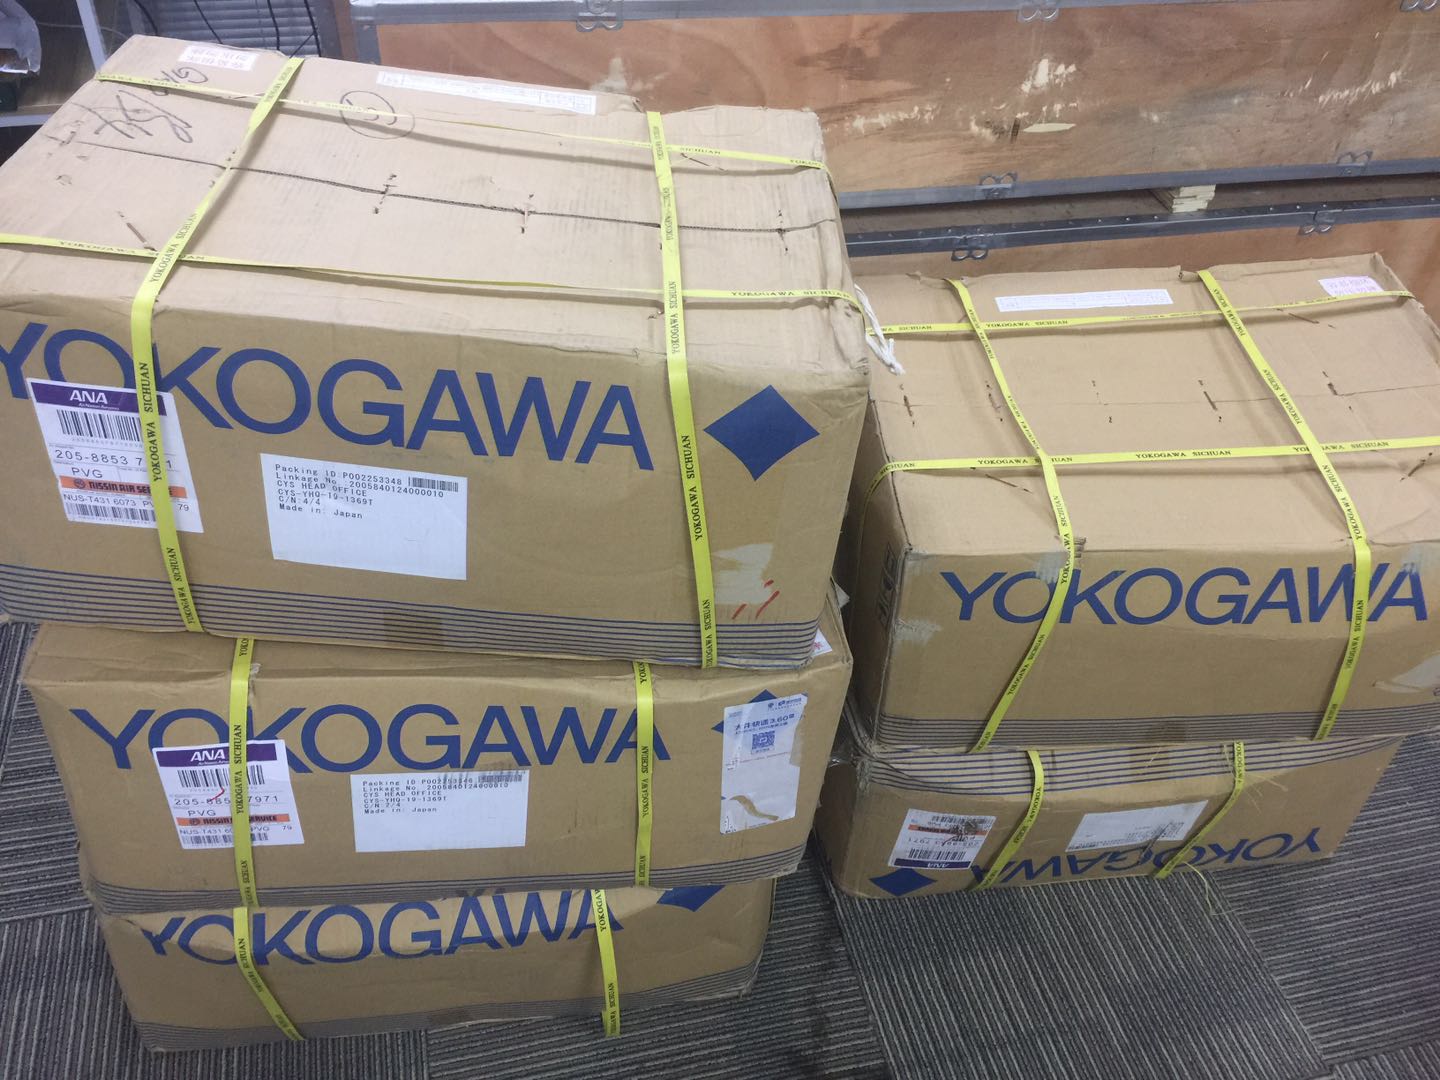 YOKOGAWA Original Oxygen Analyzers with good price of Single Channel Oxygen Analyzer System ZR22/ZR402